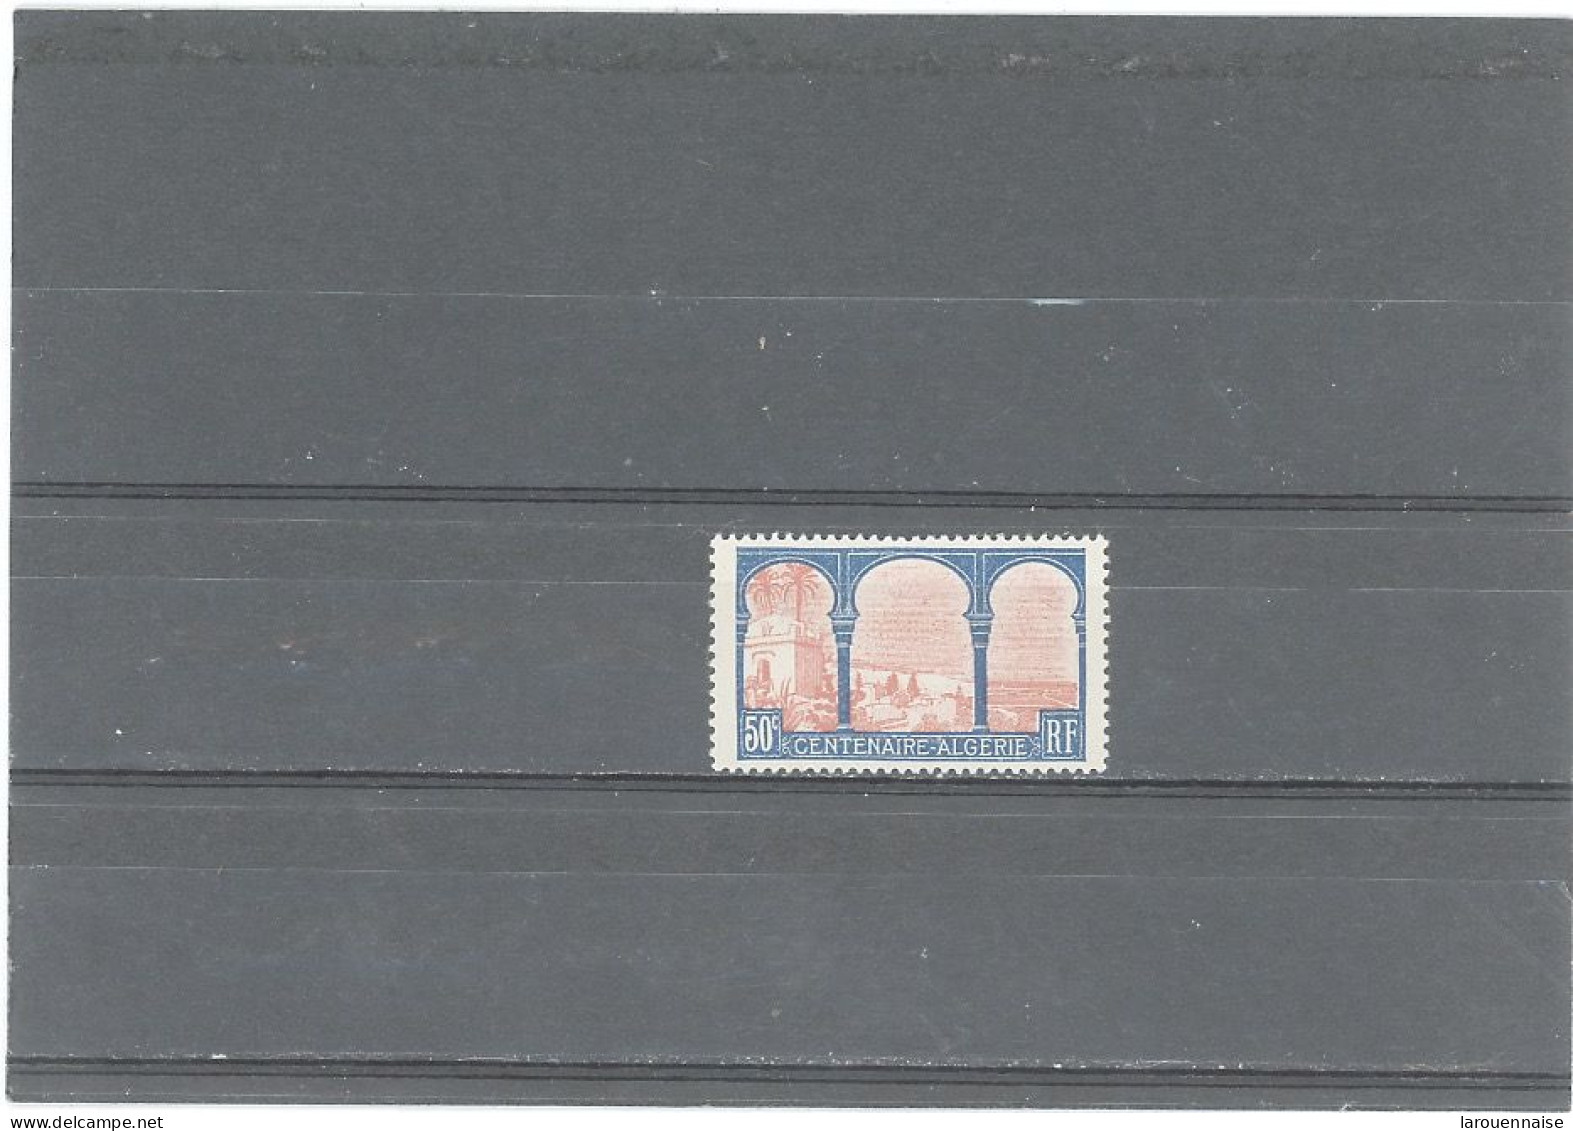 VARIÉTÉS -N°263 N* 50c CENTENAIRE DE L'ALGÉRIE -POINT BLANC ENTRE A ET I DE CENTENAIRE - Unused Stamps